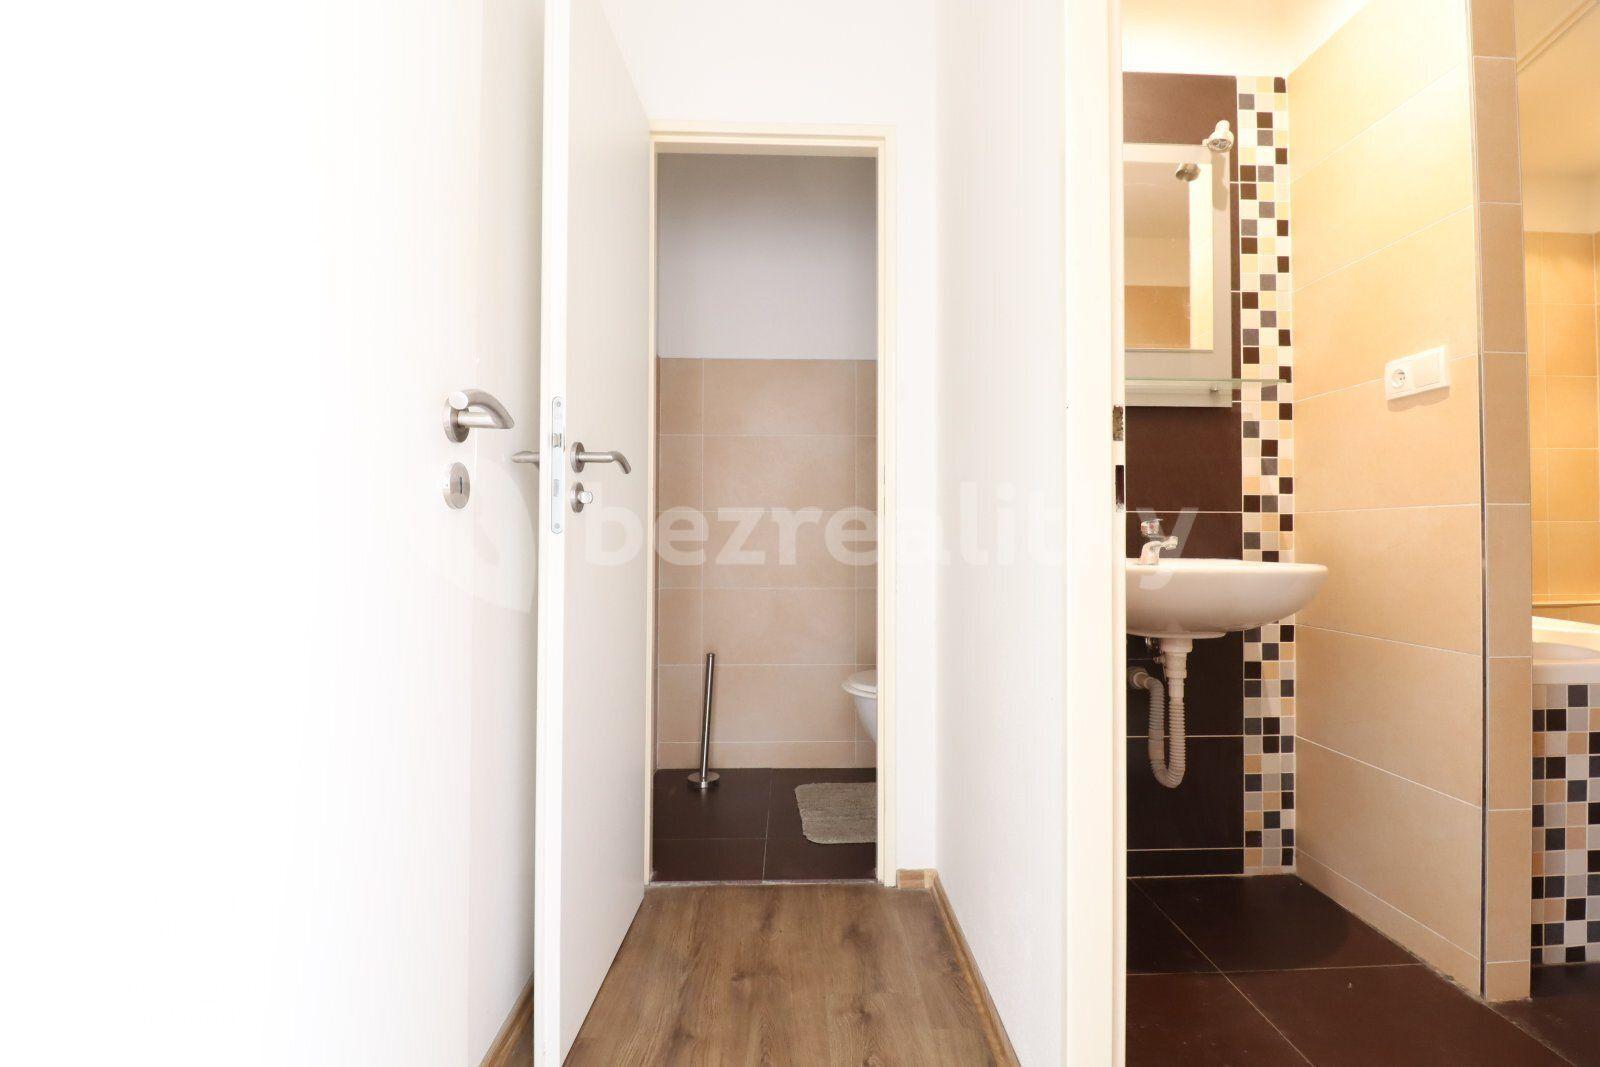 2 bedroom with open-plan kitchen flat to rent, 75 m², Přímětická, Prague, Prague